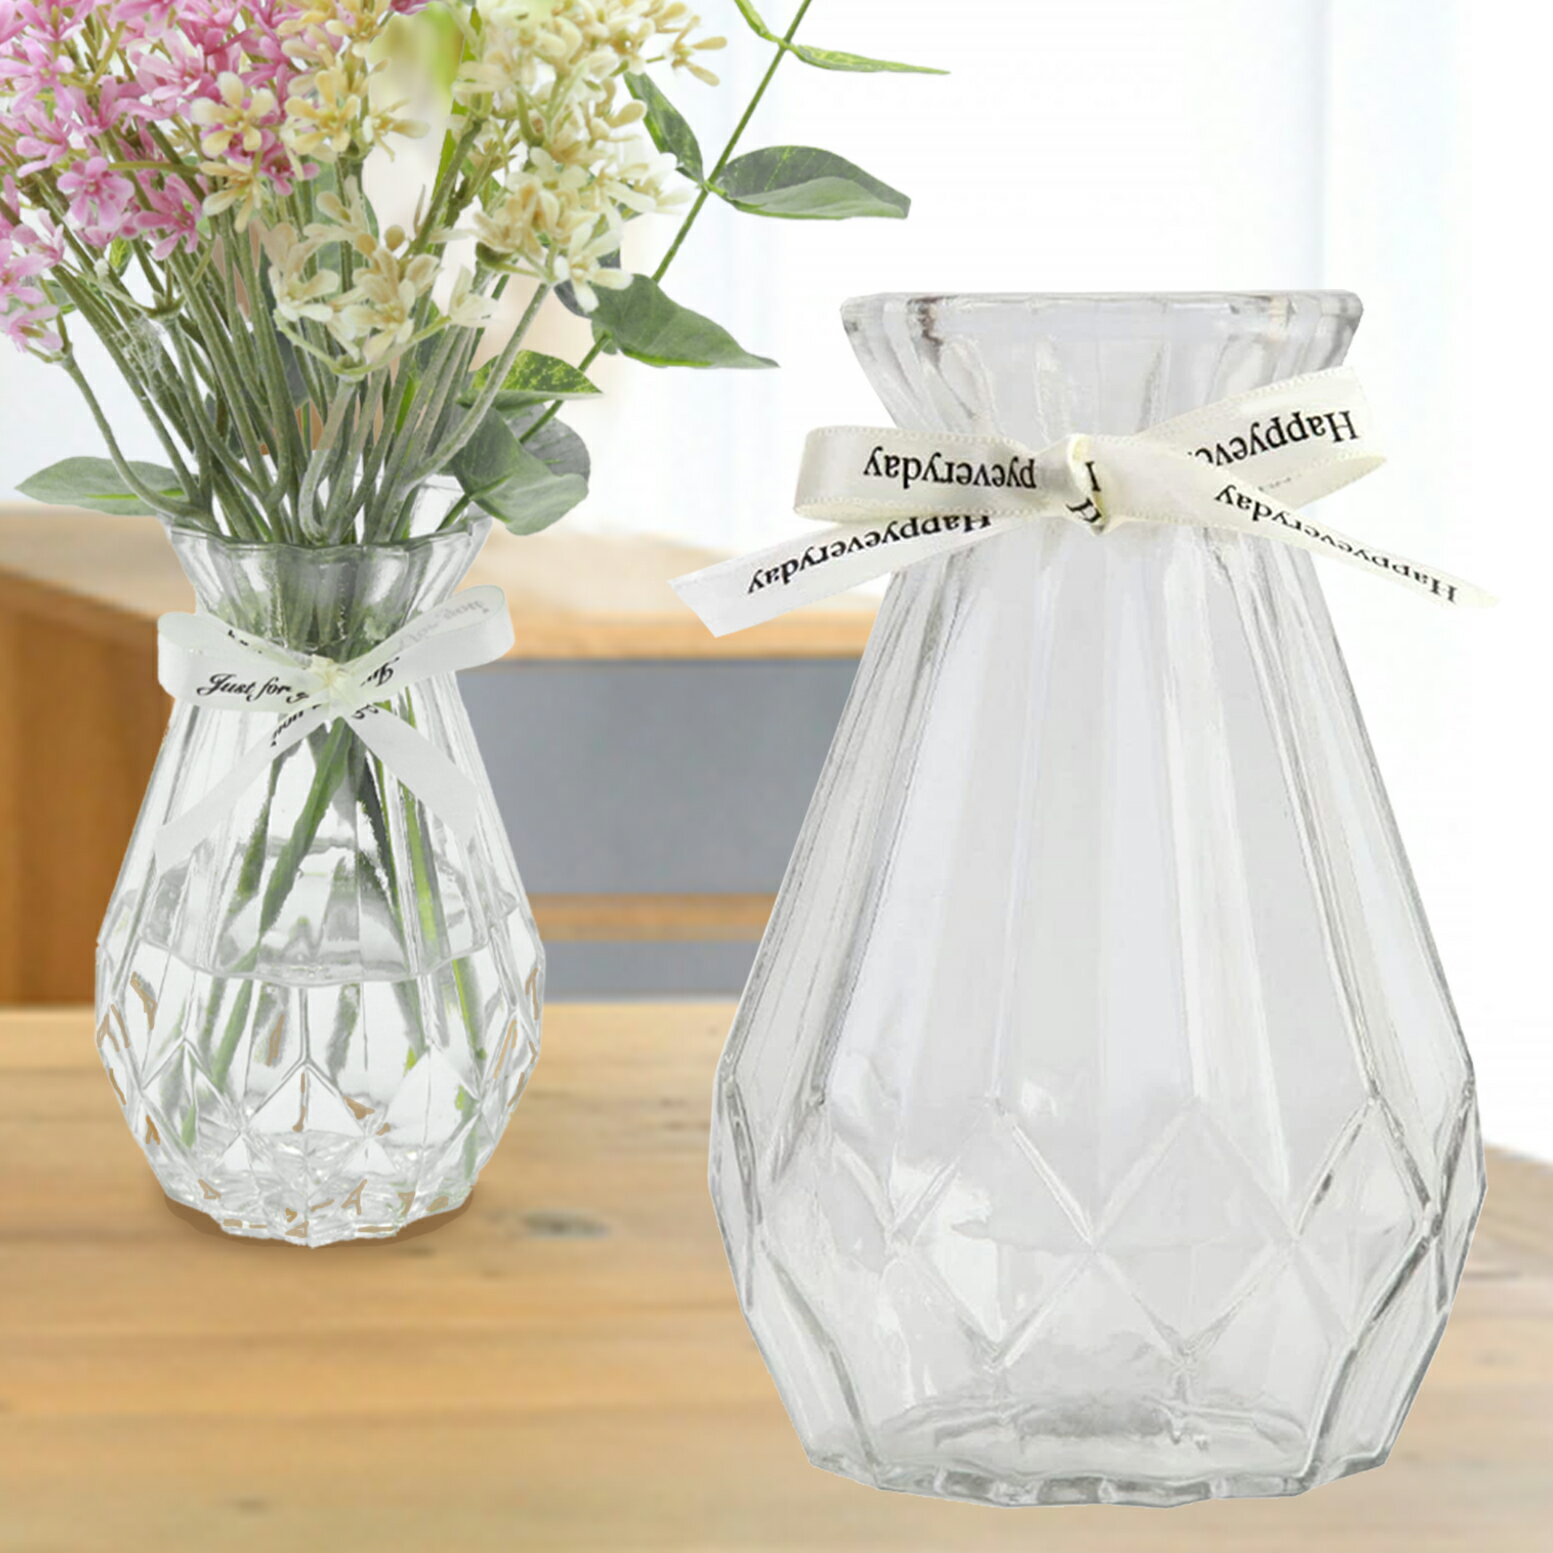 花瓶 花瓶 おしゃれ ガラス 小さめ 倒れにくい ミニサイズ 透明 フラワーベース 北欧 かわいい 小さい 花びん 小 瓶 かわいい 可愛い ビン 高さ15cm リボン 花器 かびん 玄関 リビング 食卓 ミニ 15cm プレゼント CHURACY 送料無料